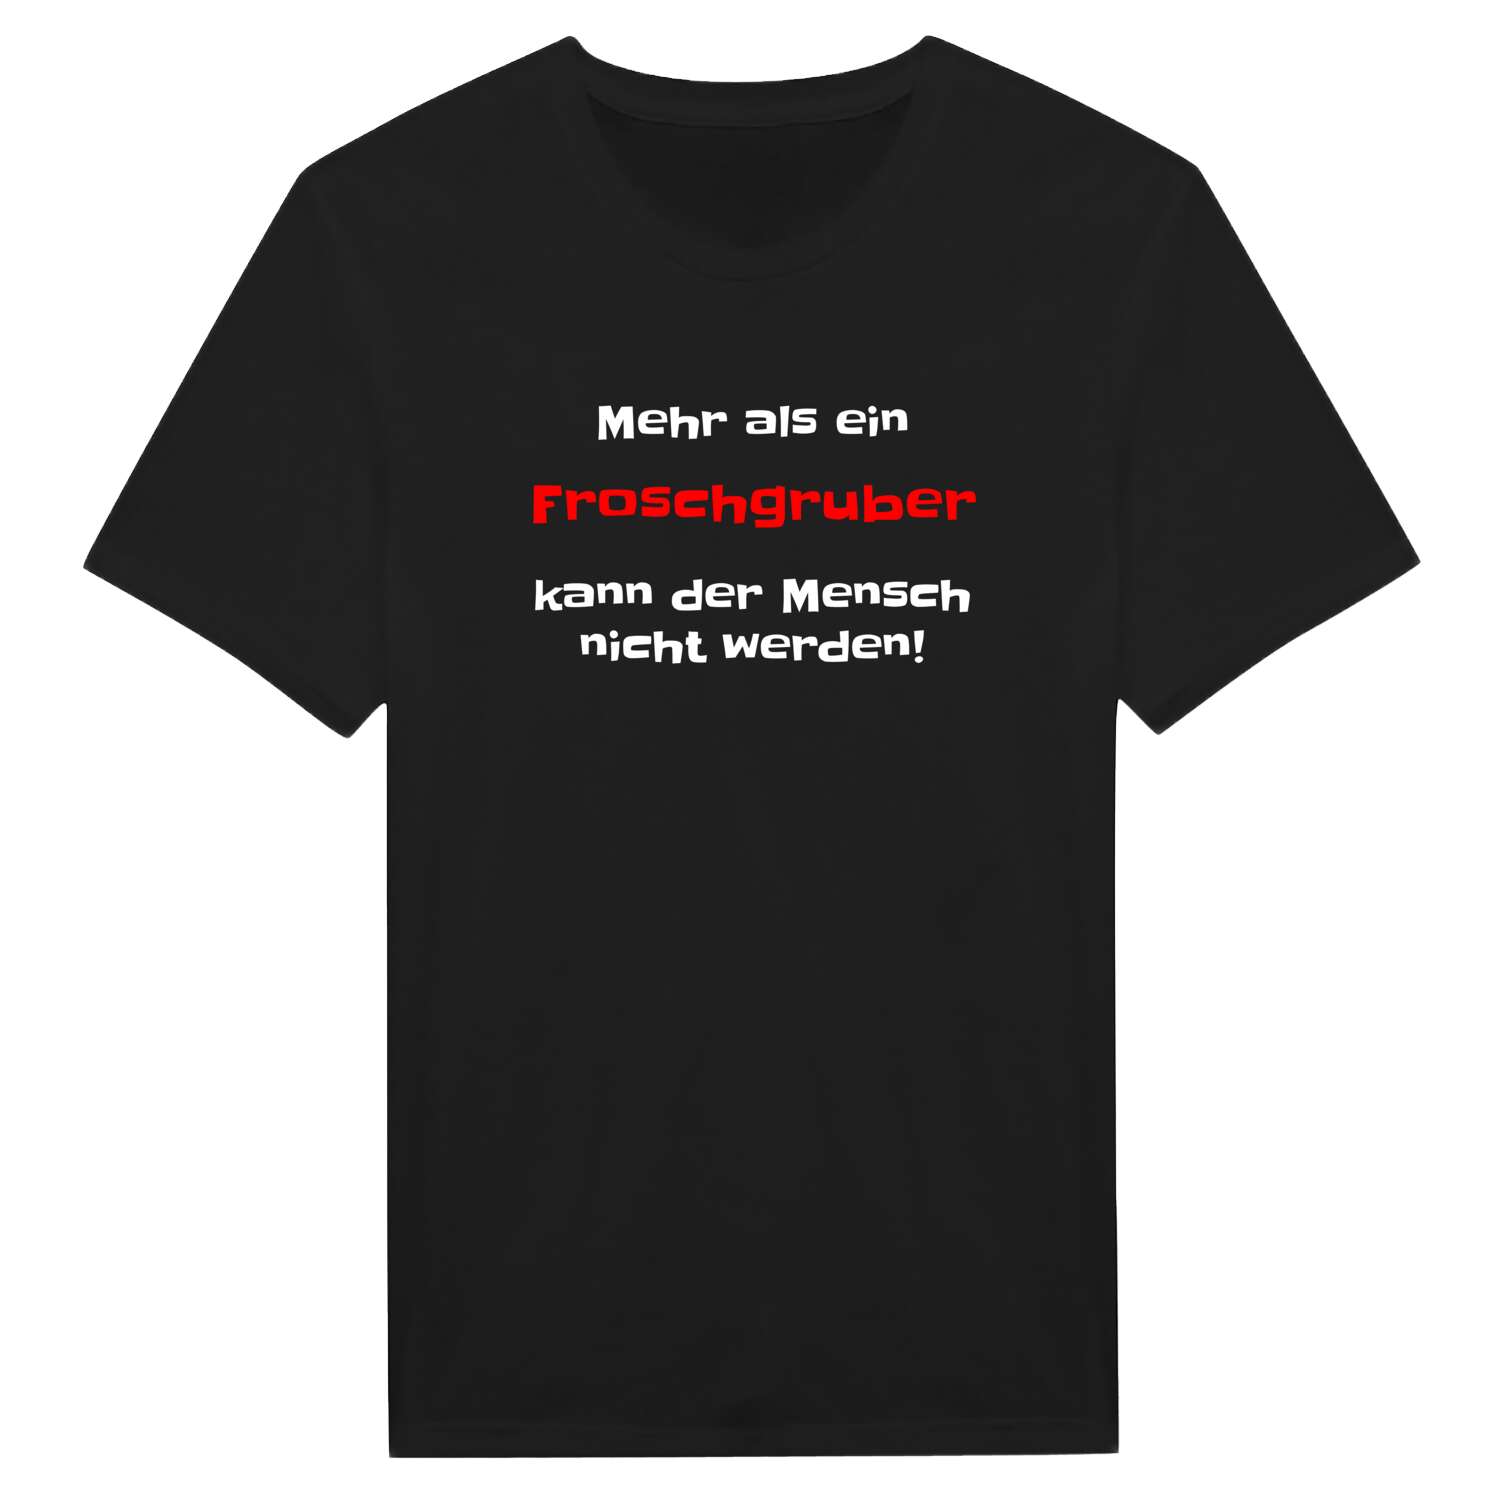 Froschgrub T-Shirt »Mehr als ein«